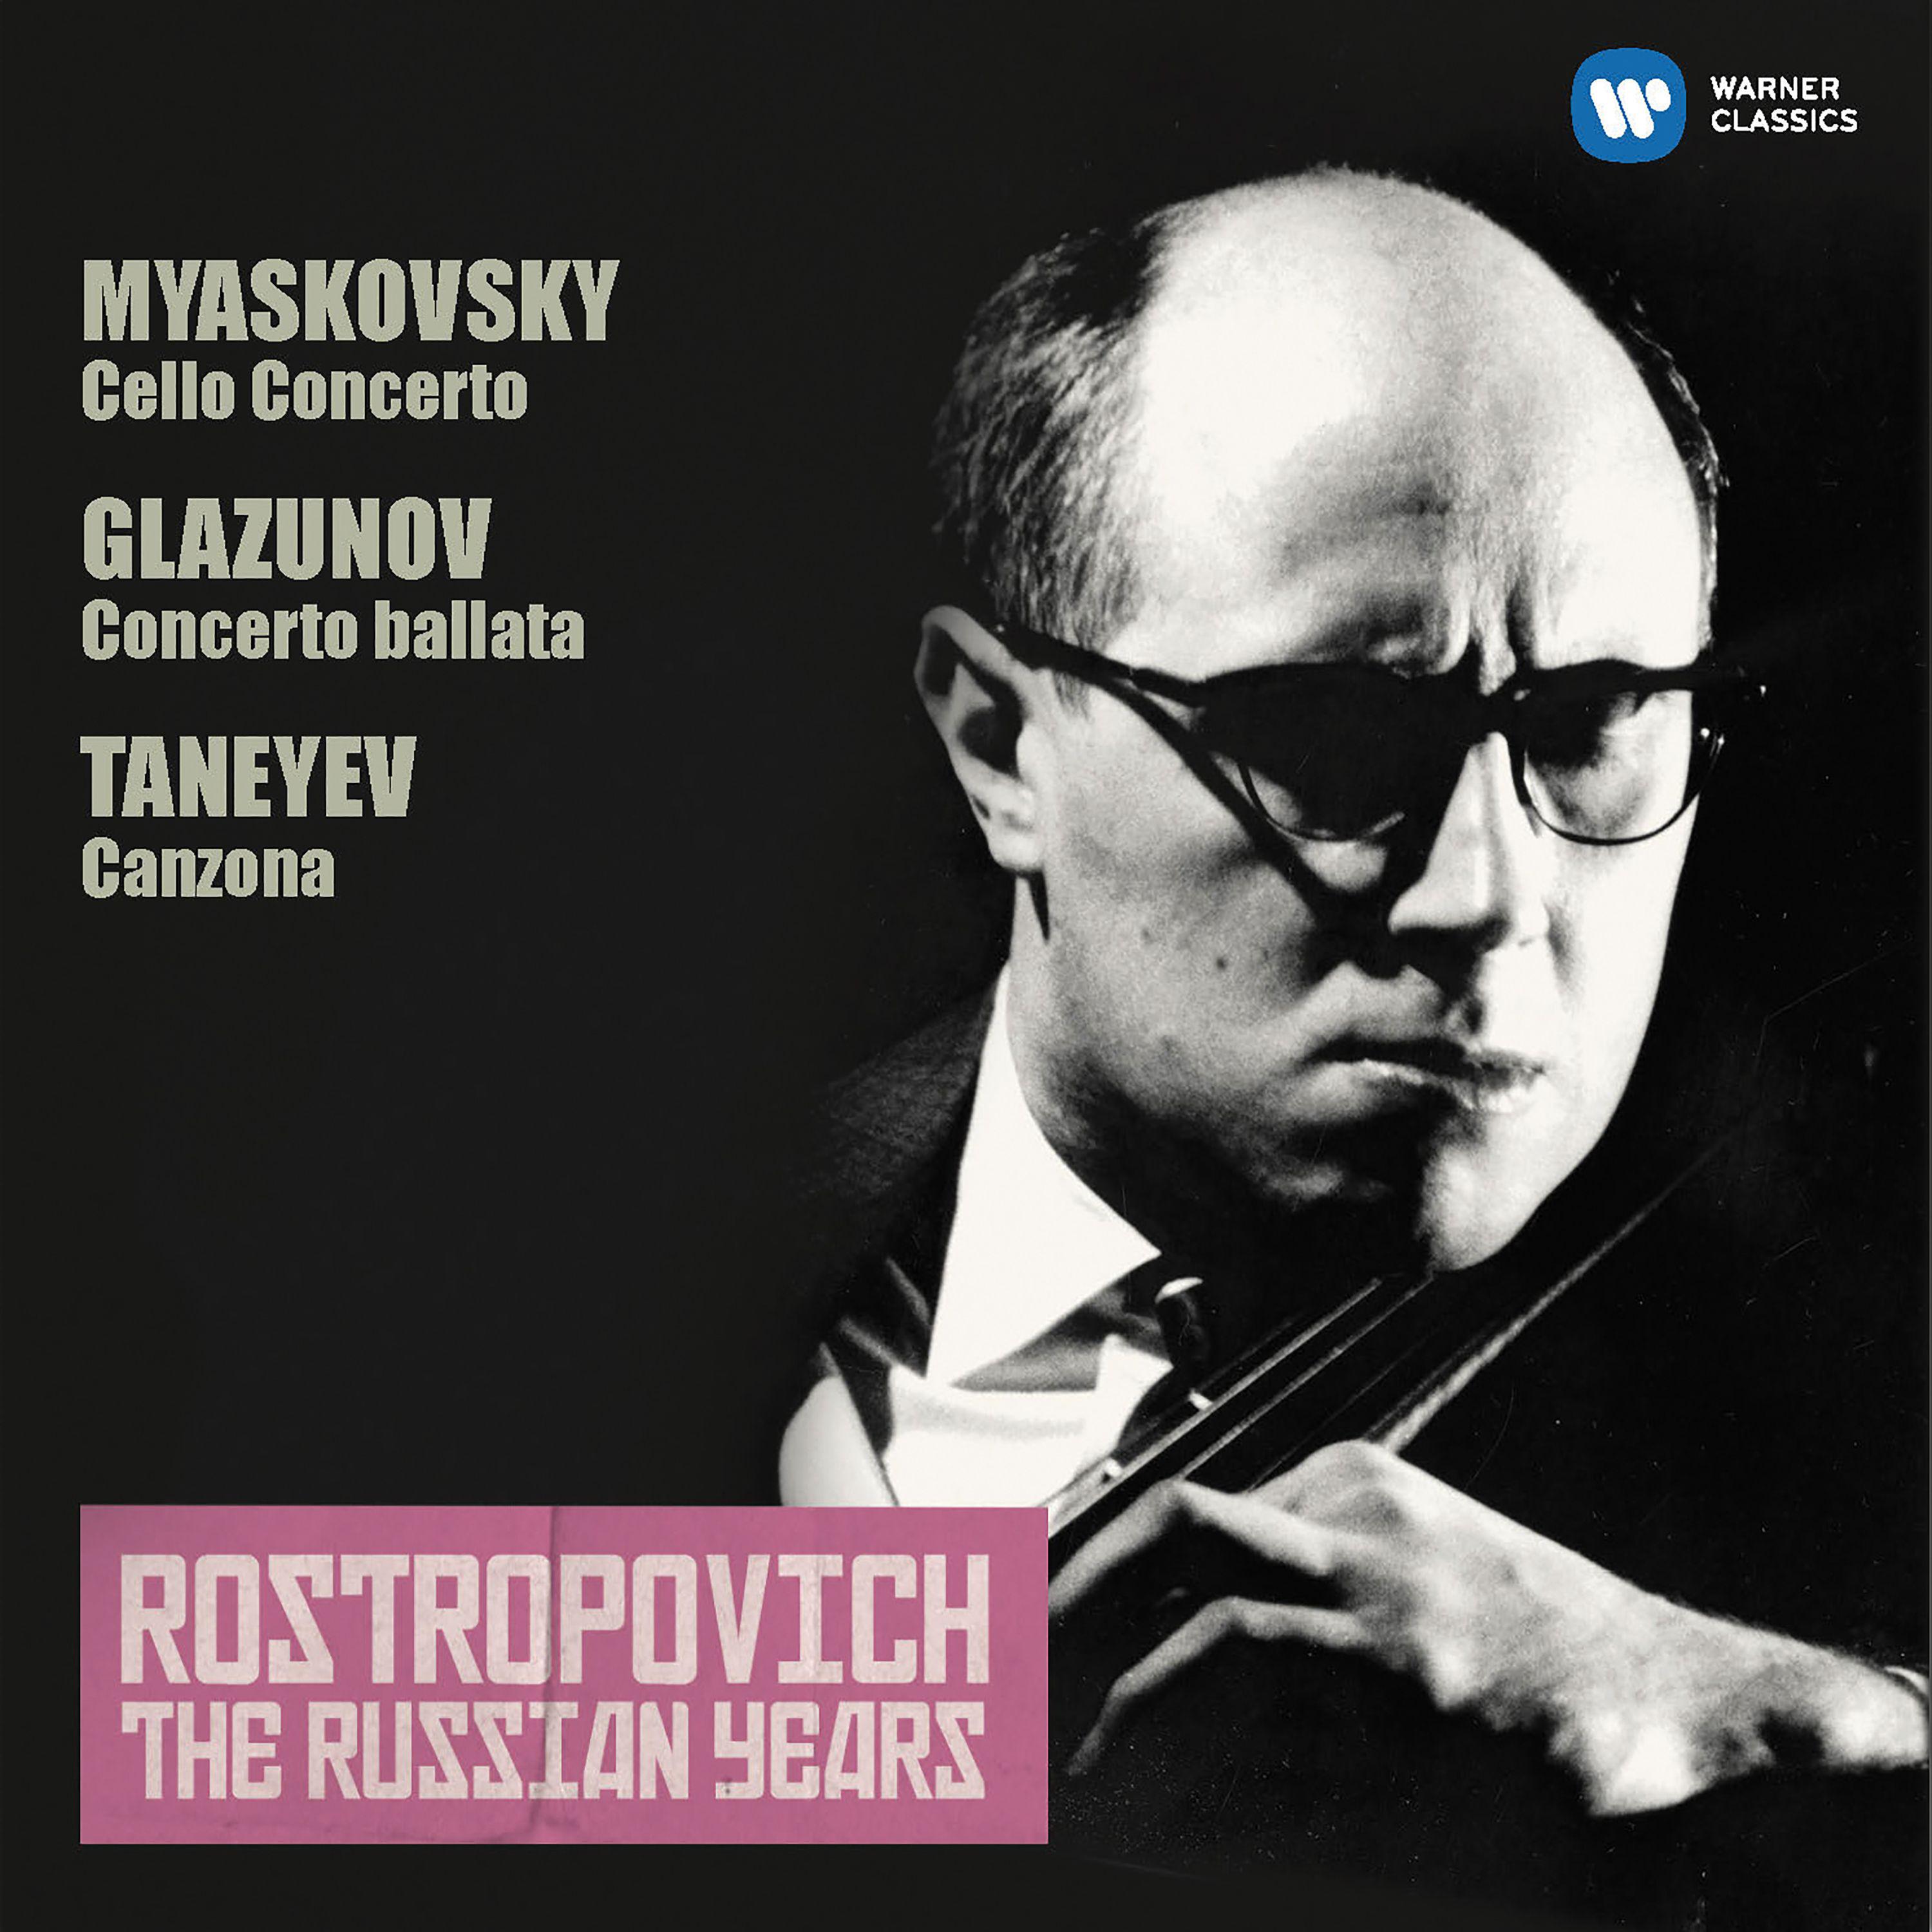 Miaskovsky: Cello Concerto - Glazunov: Concerto ballata (The Russian Years)专辑